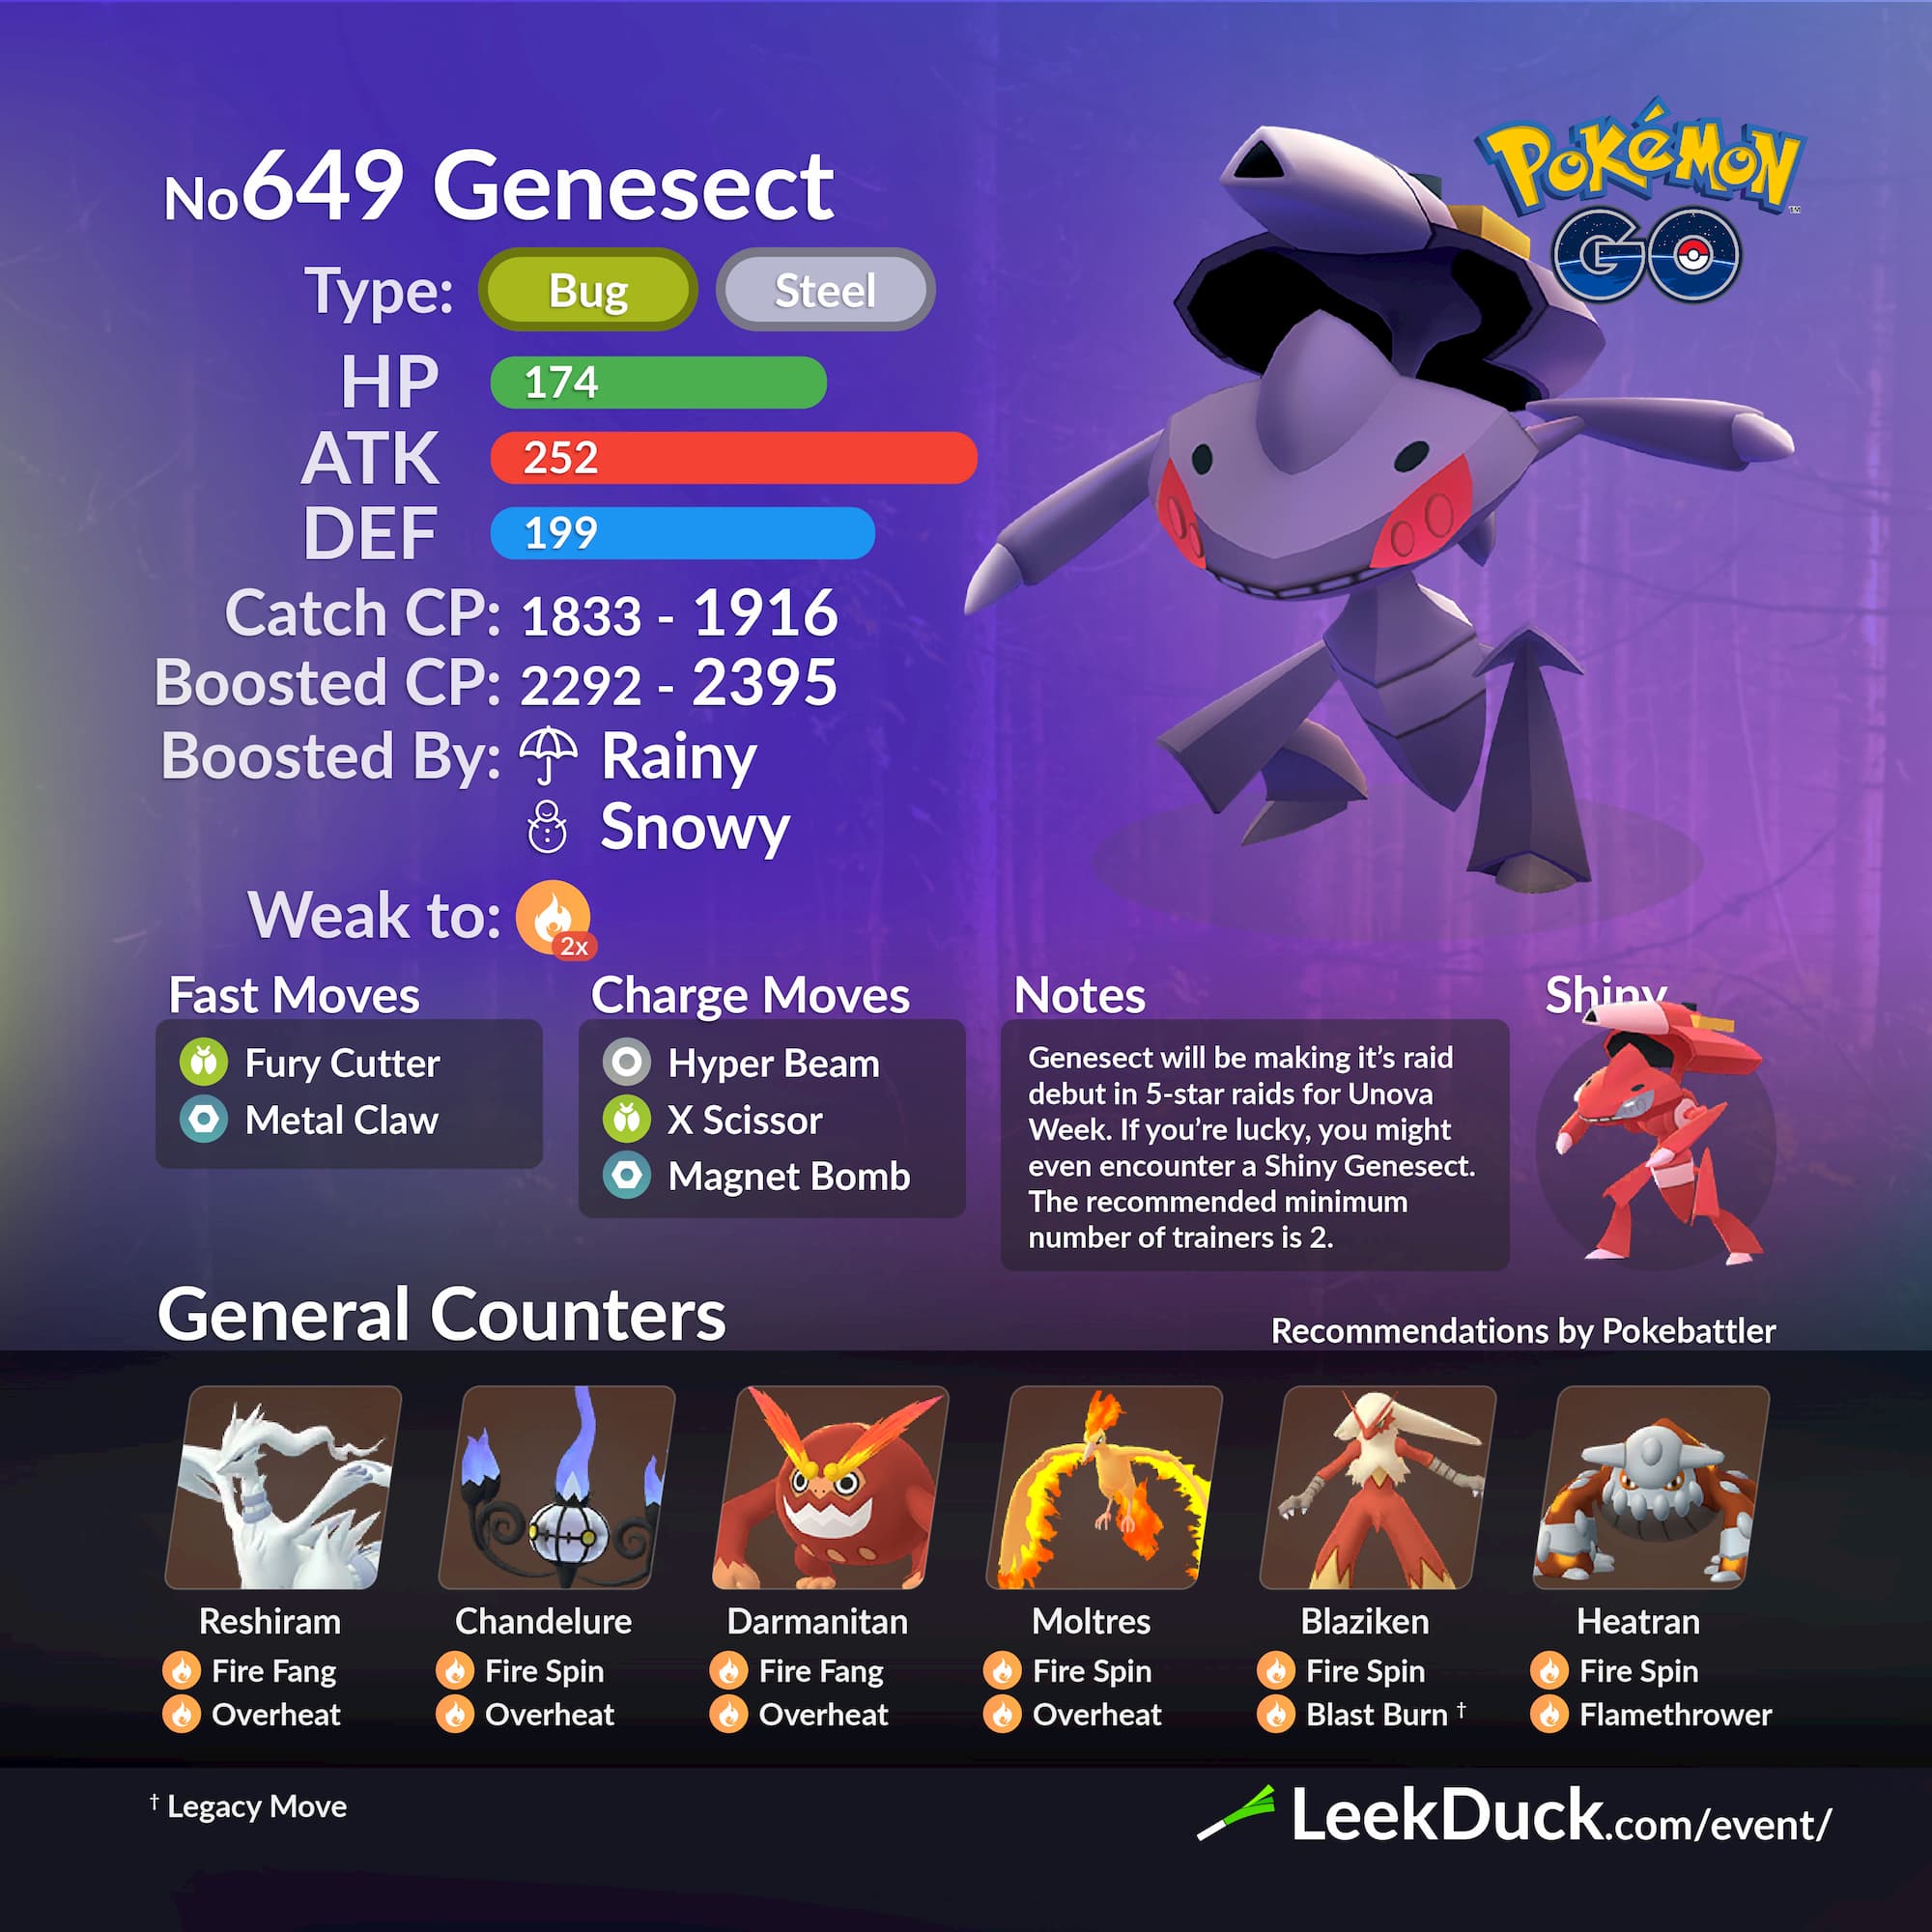 Complete Guide To Ultra Unlock: Unova Week In Pokémon GO